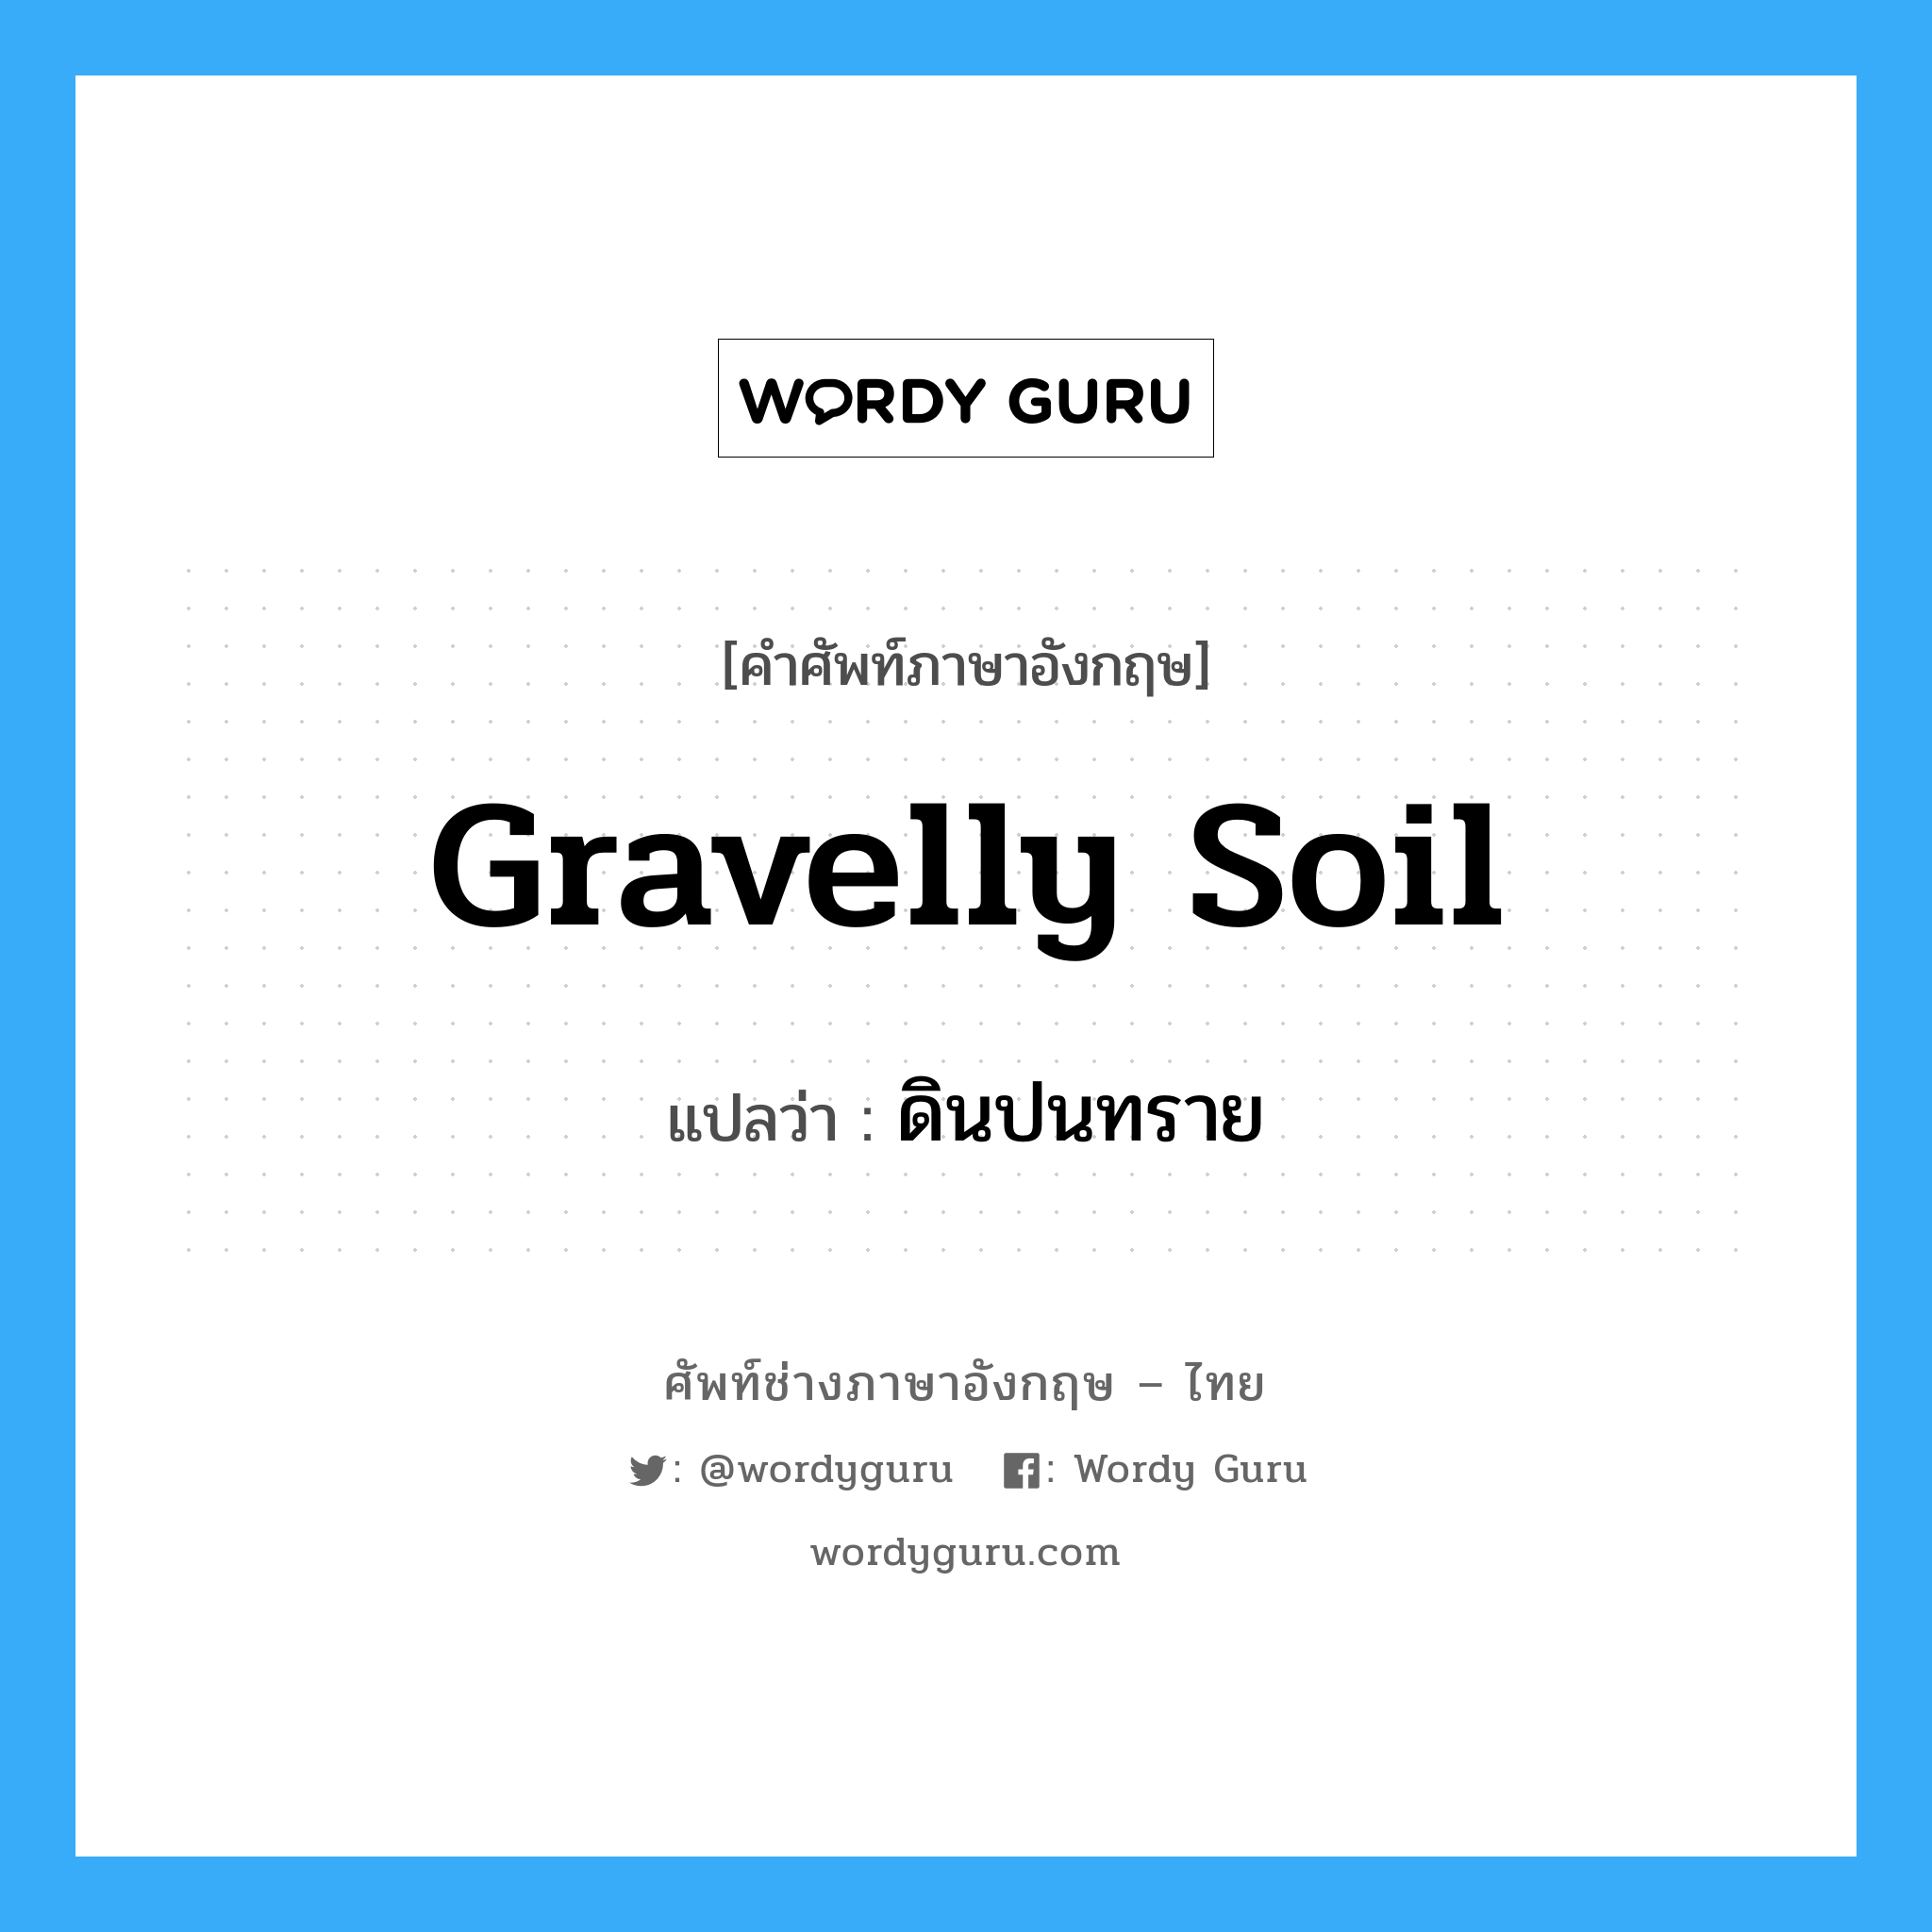 gravelly soil แปลว่า?, คำศัพท์ช่างภาษาอังกฤษ - ไทย gravelly soil คำศัพท์ภาษาอังกฤษ gravelly soil แปลว่า ดินปนทราย